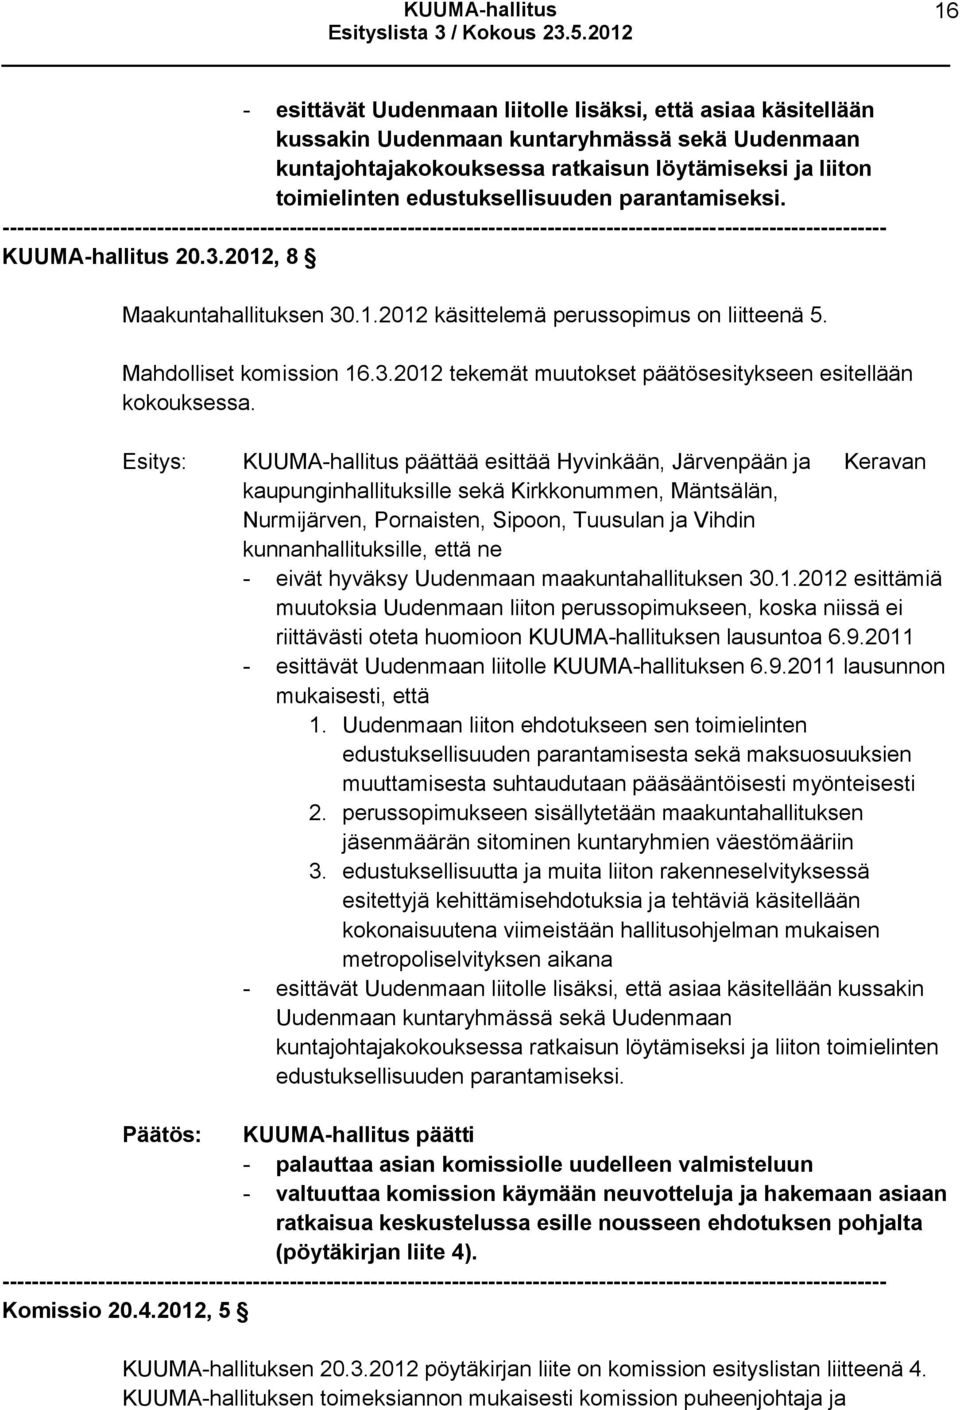 KUUMA-hallitus päättää esittää Hyvinkään, Järvenpään ja Keravan kaupunginhallituksille sekä Kirkkonummen, Mäntsälän, Nurmijärven, Pornaisten, Sipoon, Tuusulan ja Vihdin kunnanhallituksille, että ne -